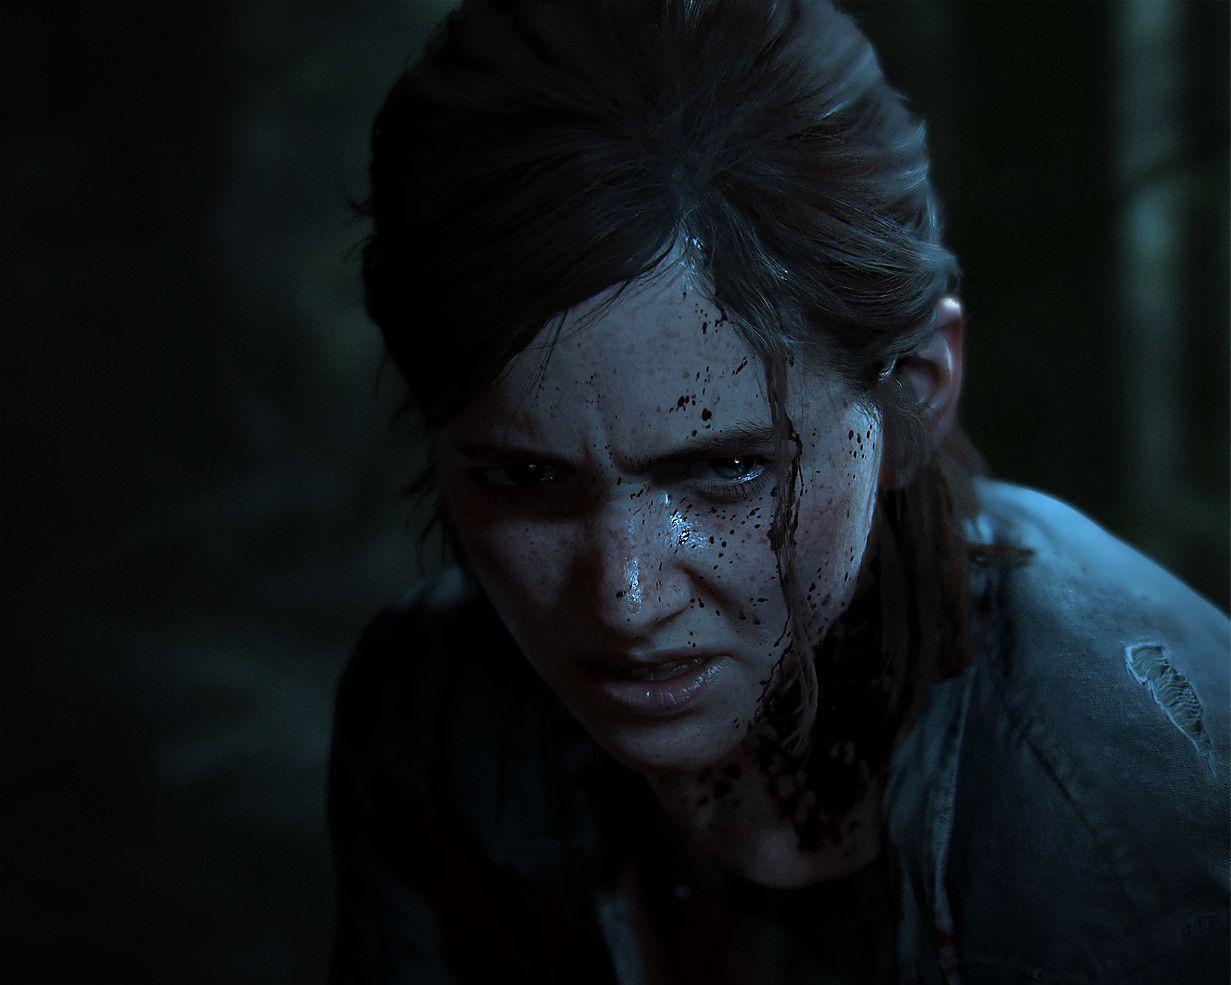 Ellie PlayStation 4 The Last of Us 2 the last of us part II #1080P